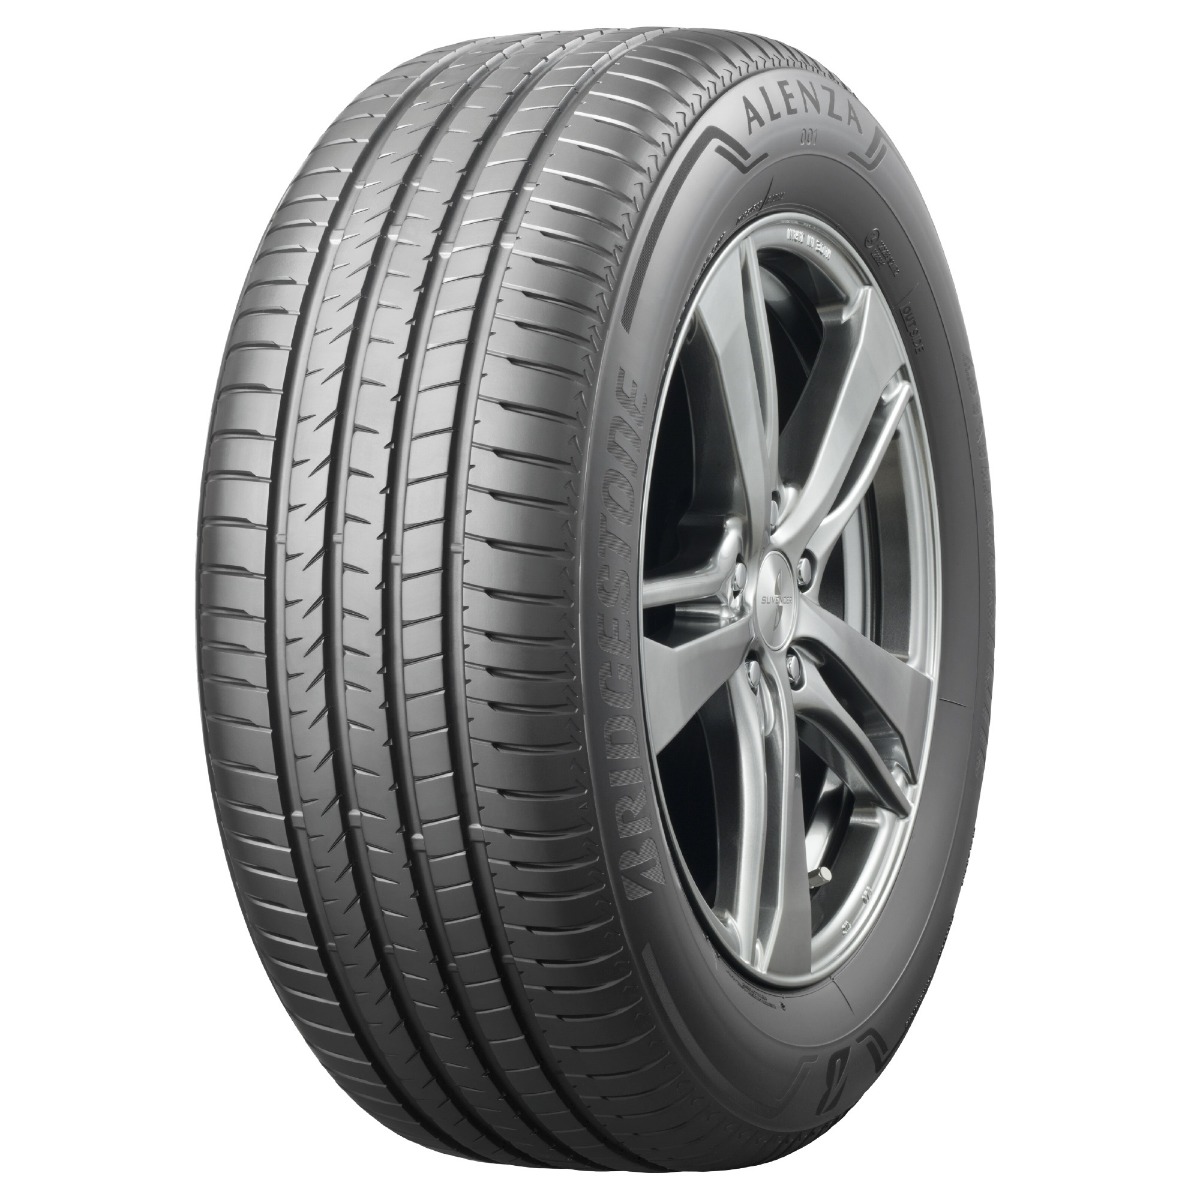 FIt&Fix | Bridgestone Alenza AL01 ER MO Extended Car Tire - 235